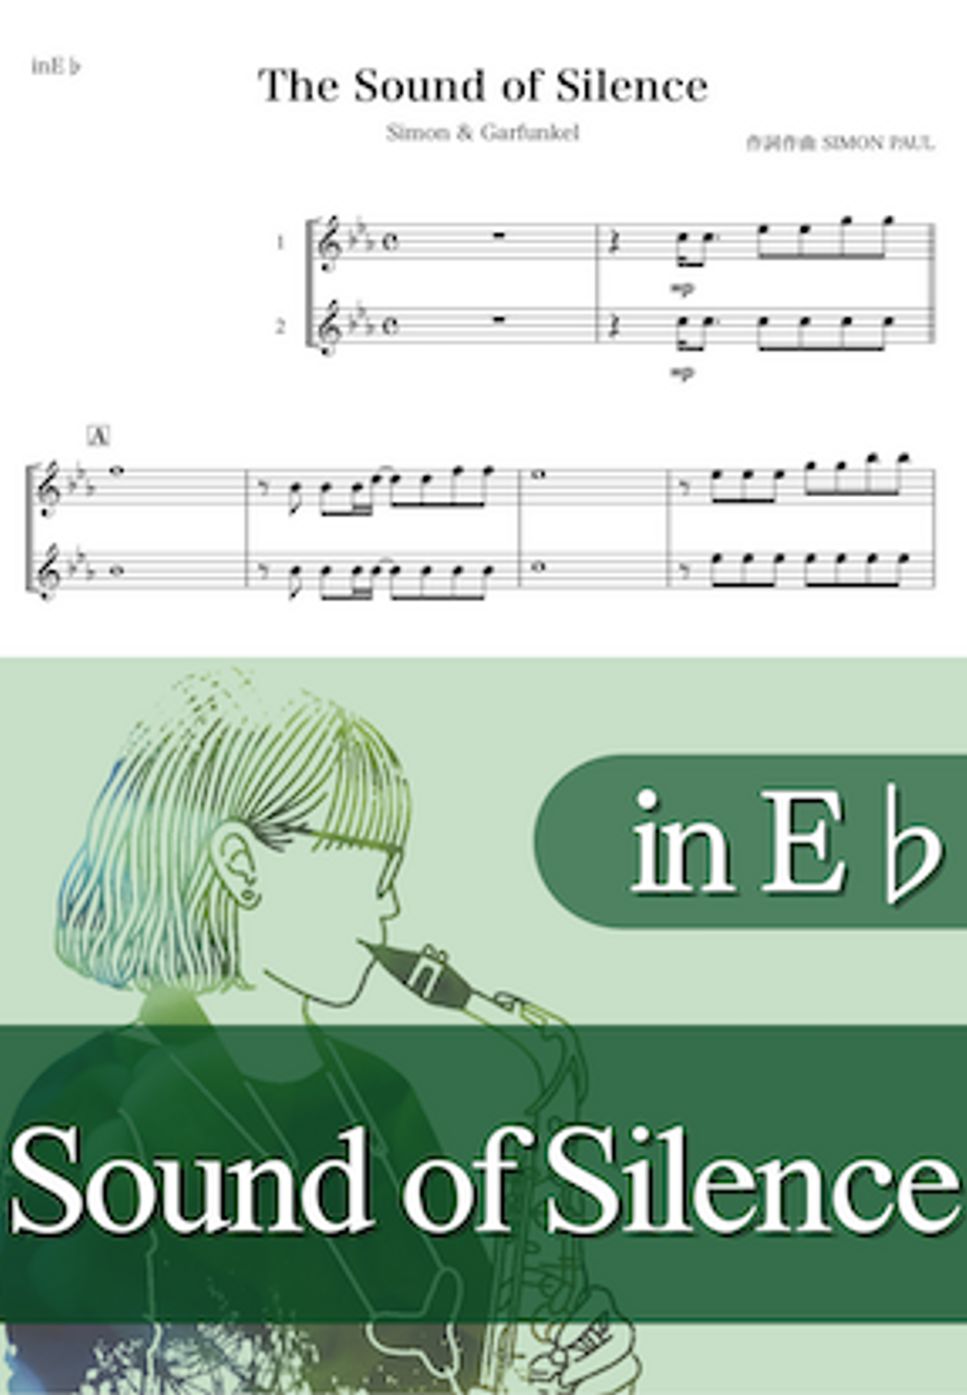 サイモン&ガーファンクル - Sound of Silence (E♭) by kanamusic